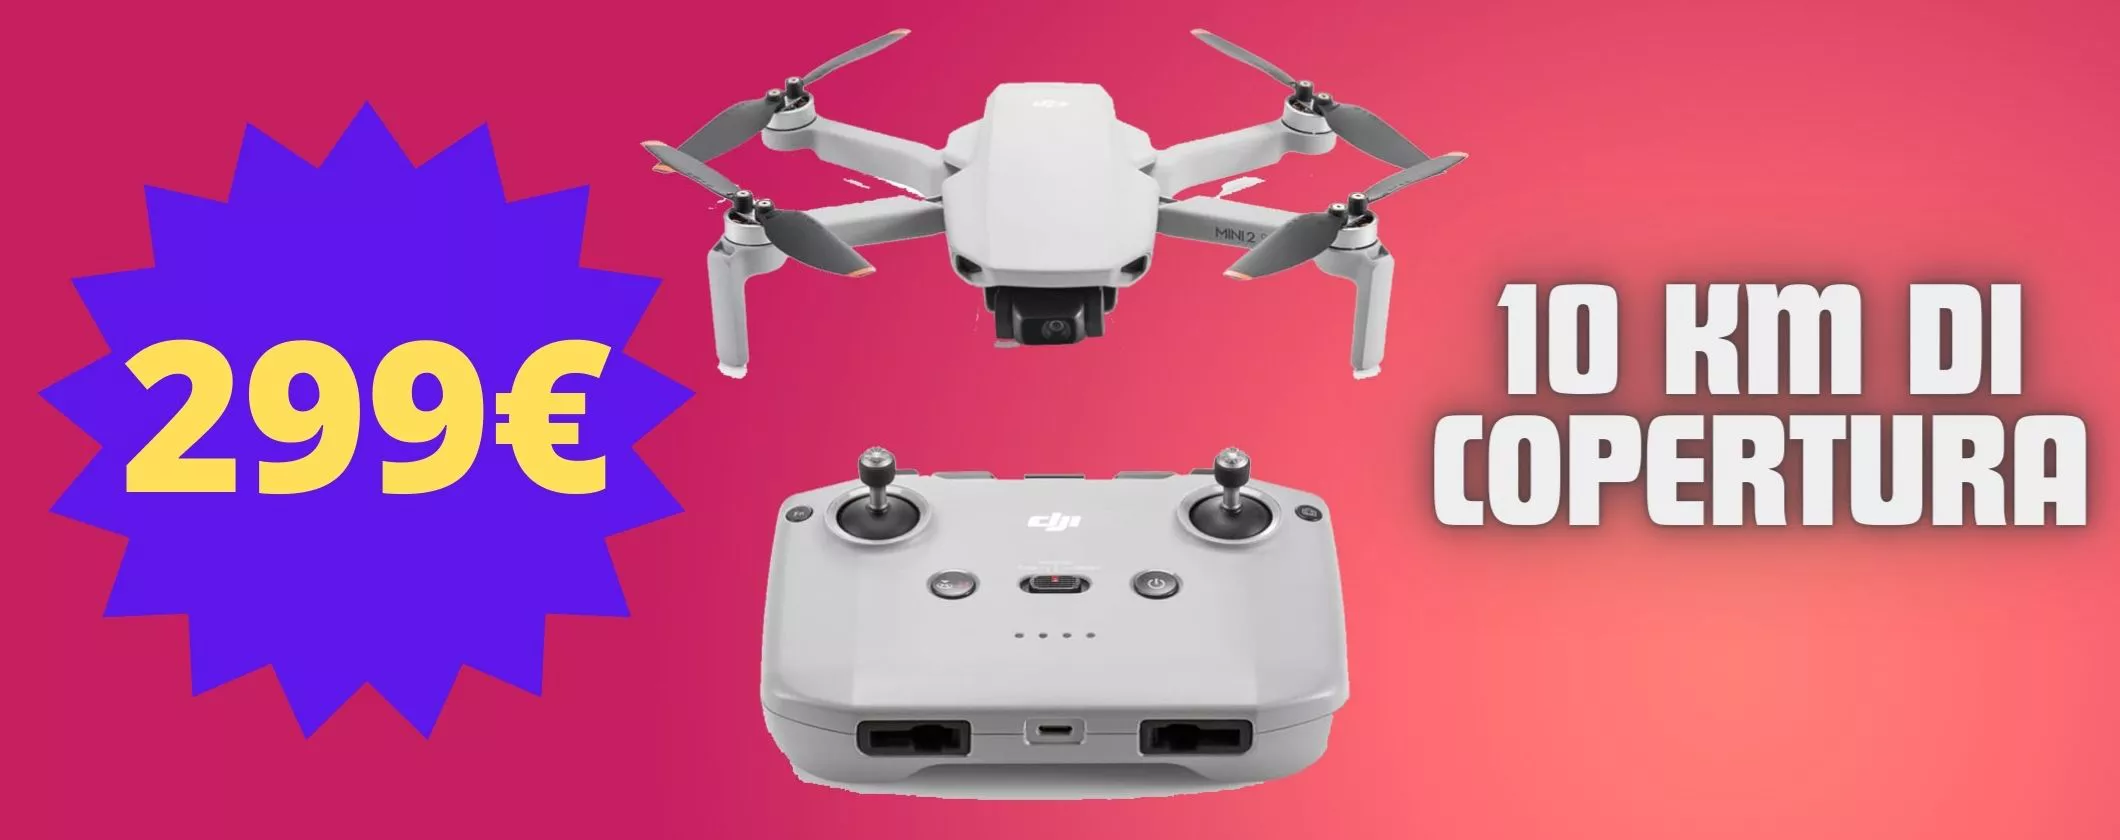 Riprese SPAZIALI con drone DJI Mini 2 SE: vola a 279€ su Amazon